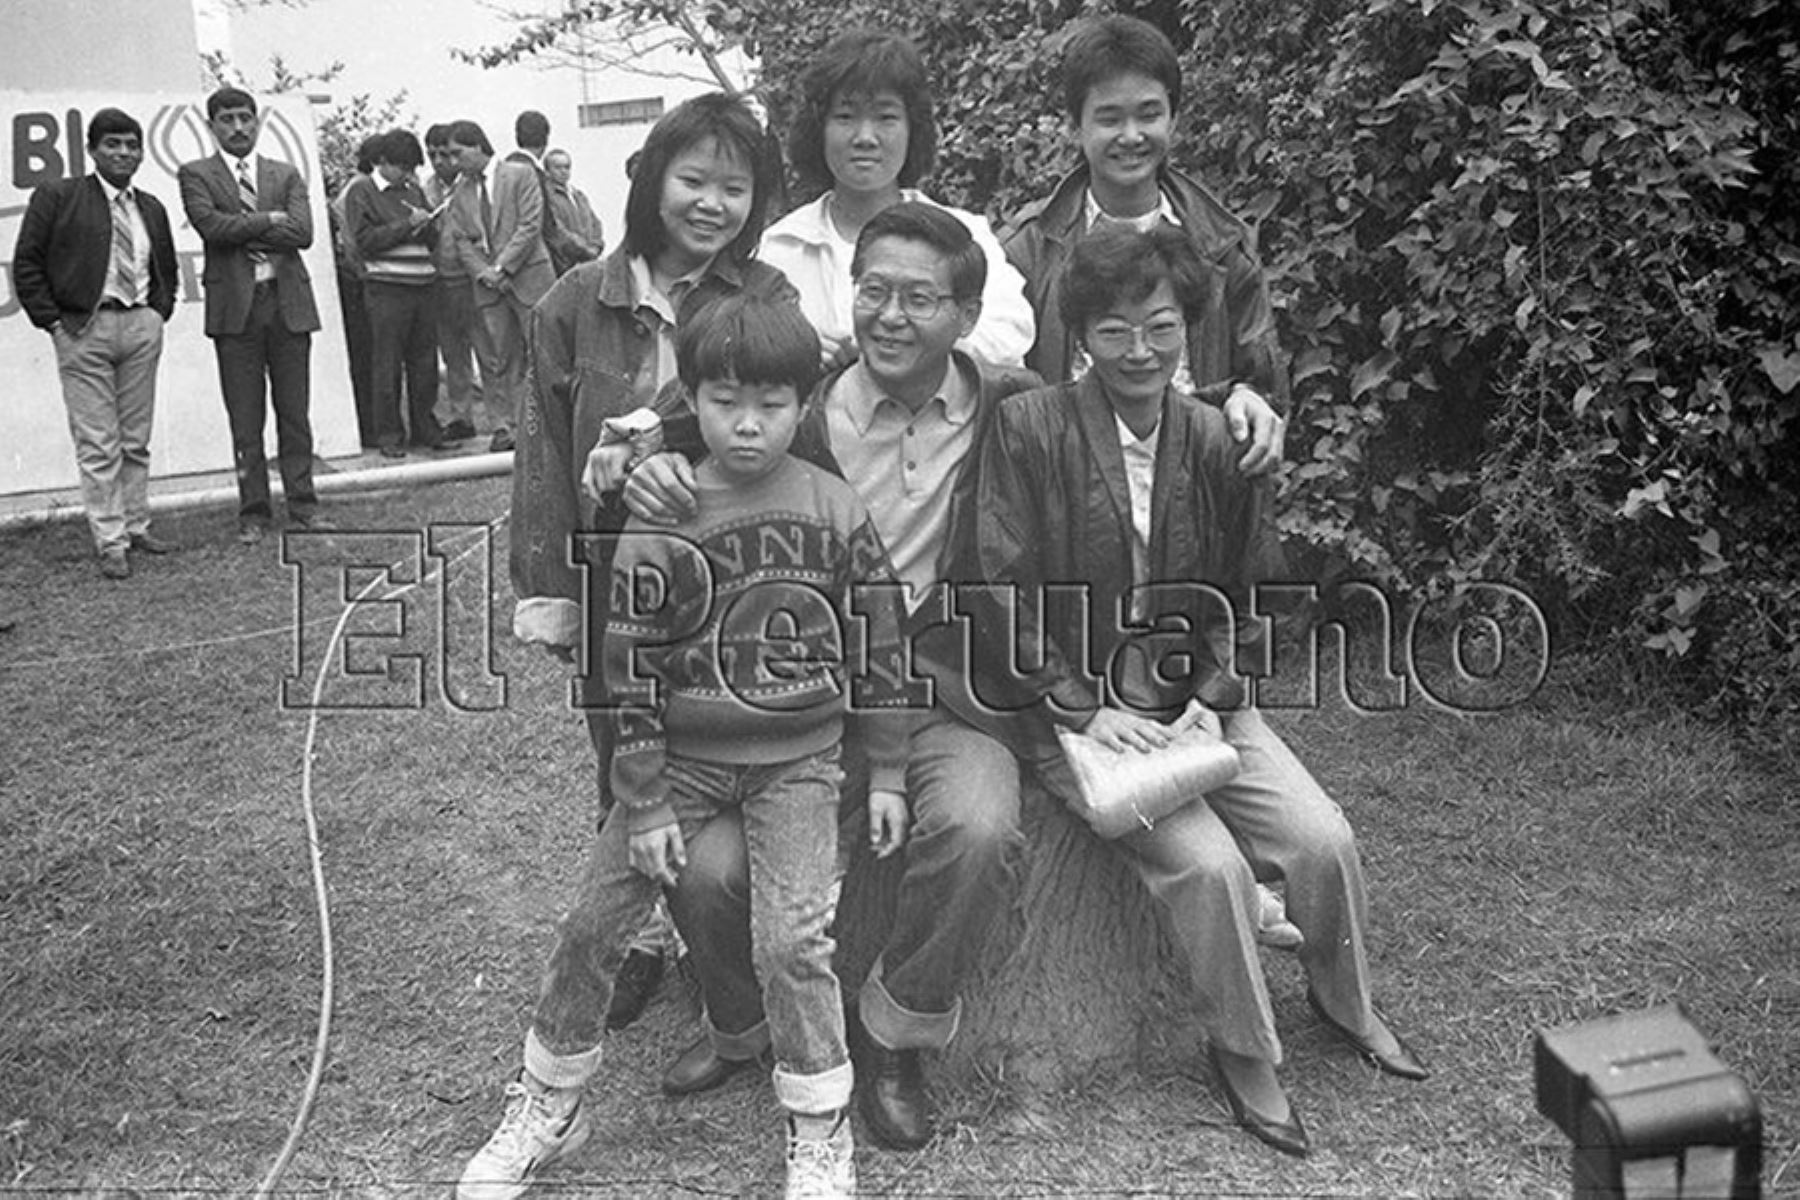 Lima - 17 junio 1990 / El presidente electo Alberto Fujimori Fujimori junto a su esposa Susana Higuchi y sus hijos Keiko, Hiro, Sachi y Kenji Fujimori Higuchi. Archivo Histórico de EL PERUANO / Rómulo Luján